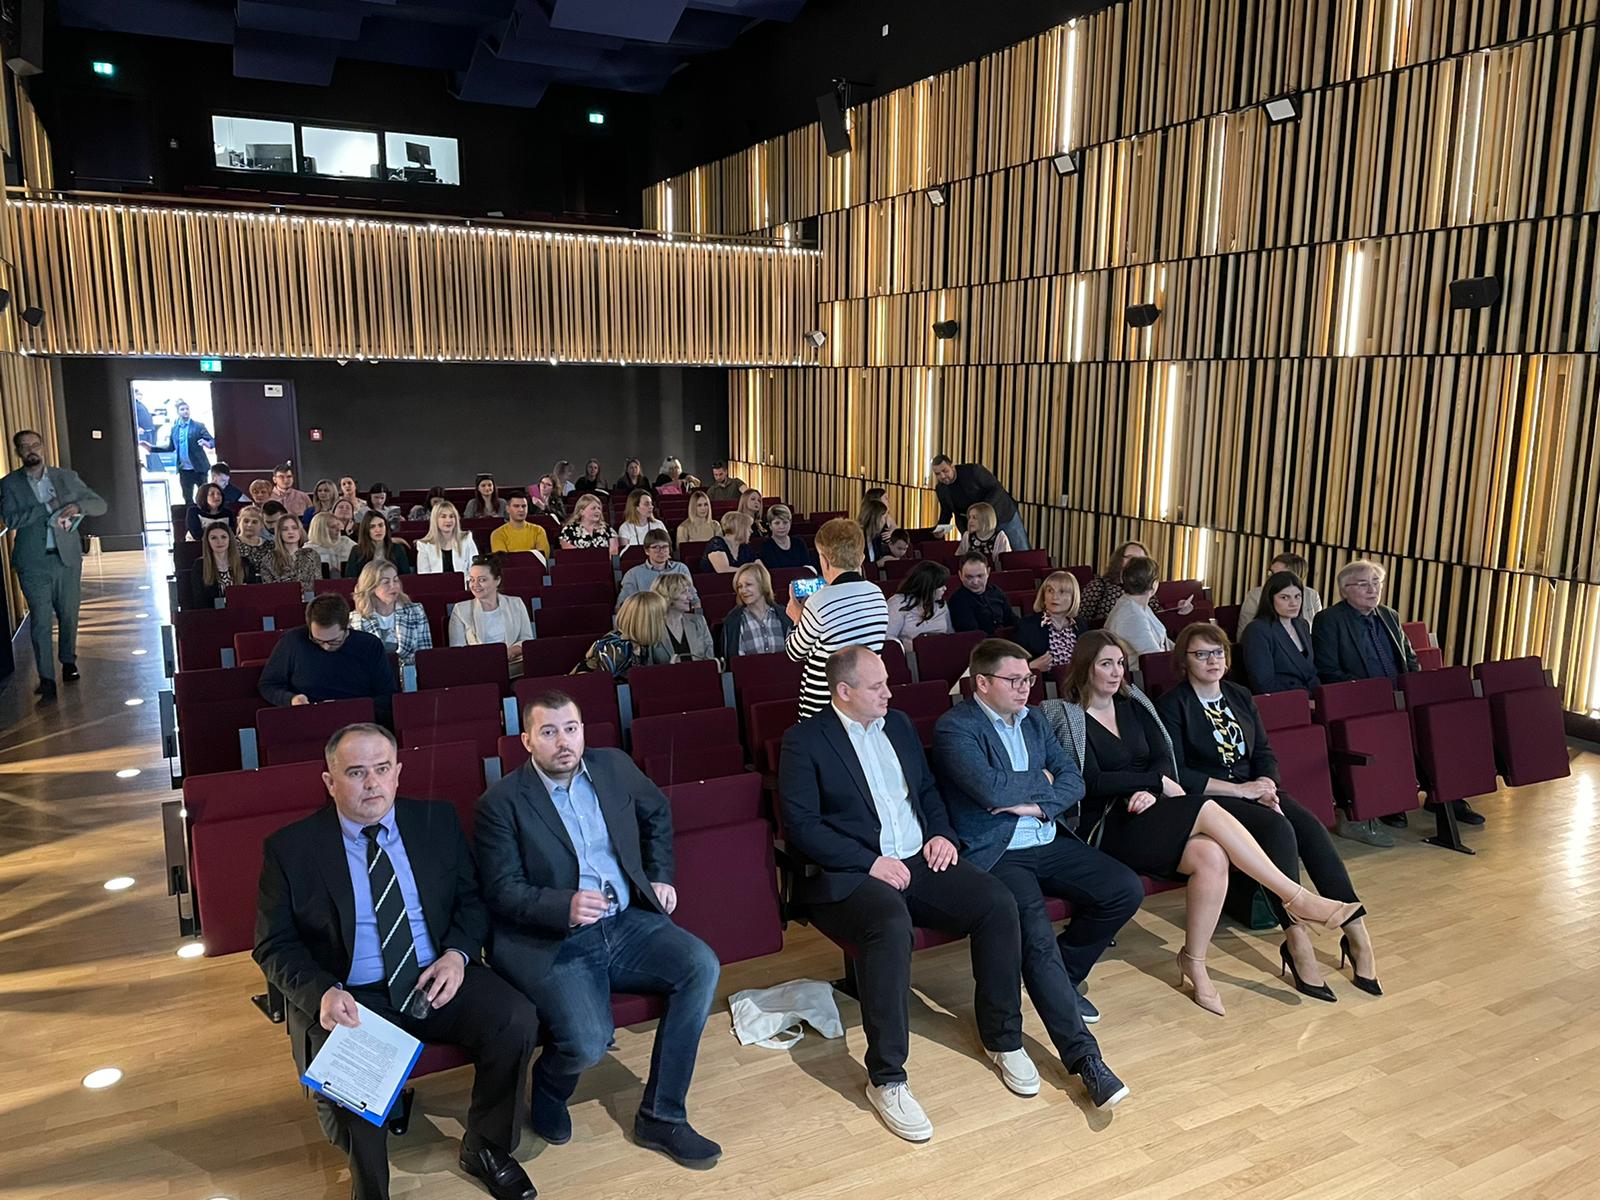 Međunarodnim kongresom Štamparovi dani započelo mjesec konferencija u Pleternici: “Vjerujem kako možemo postati kvalitetan centar za konferencije i kongrese”